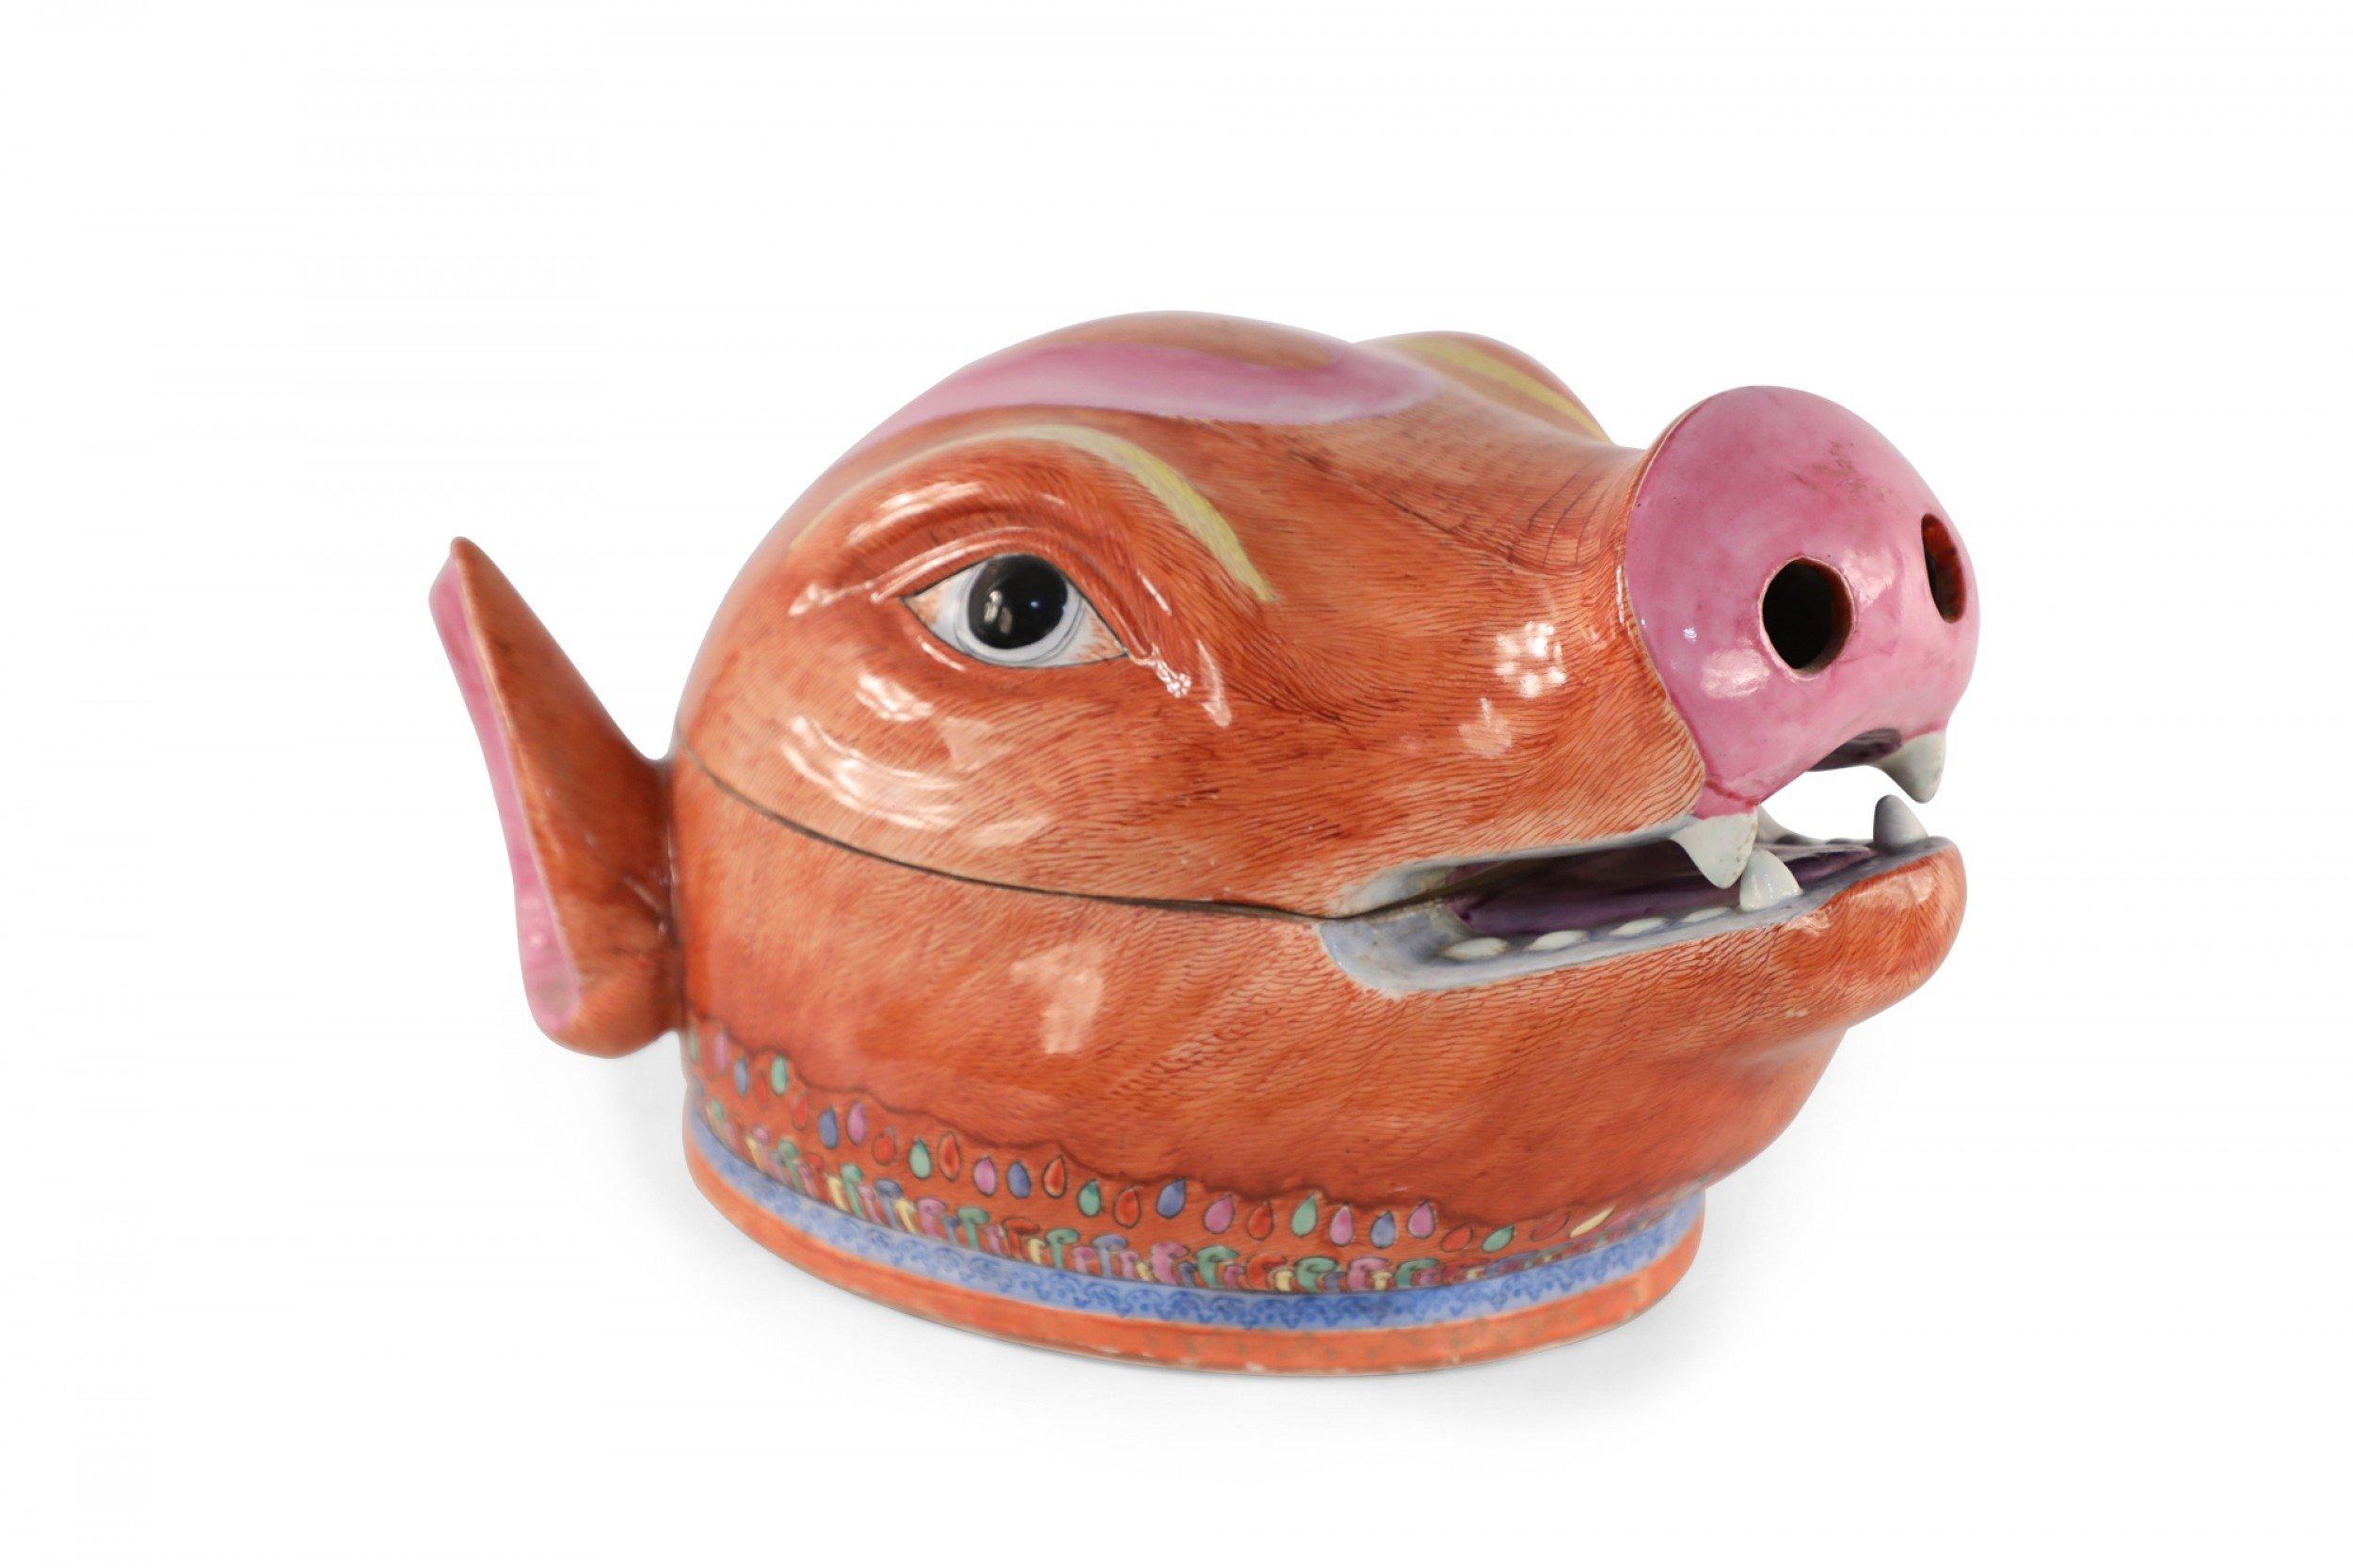 Soupière ancienne en porcelaine d'exportation chinoise (début du 20e siècle) en forme de tête de cochon orange et rose divisée en couvercle et base au niveau de l'embouchure, et décorée d'un motif coloré autour de la base.
 